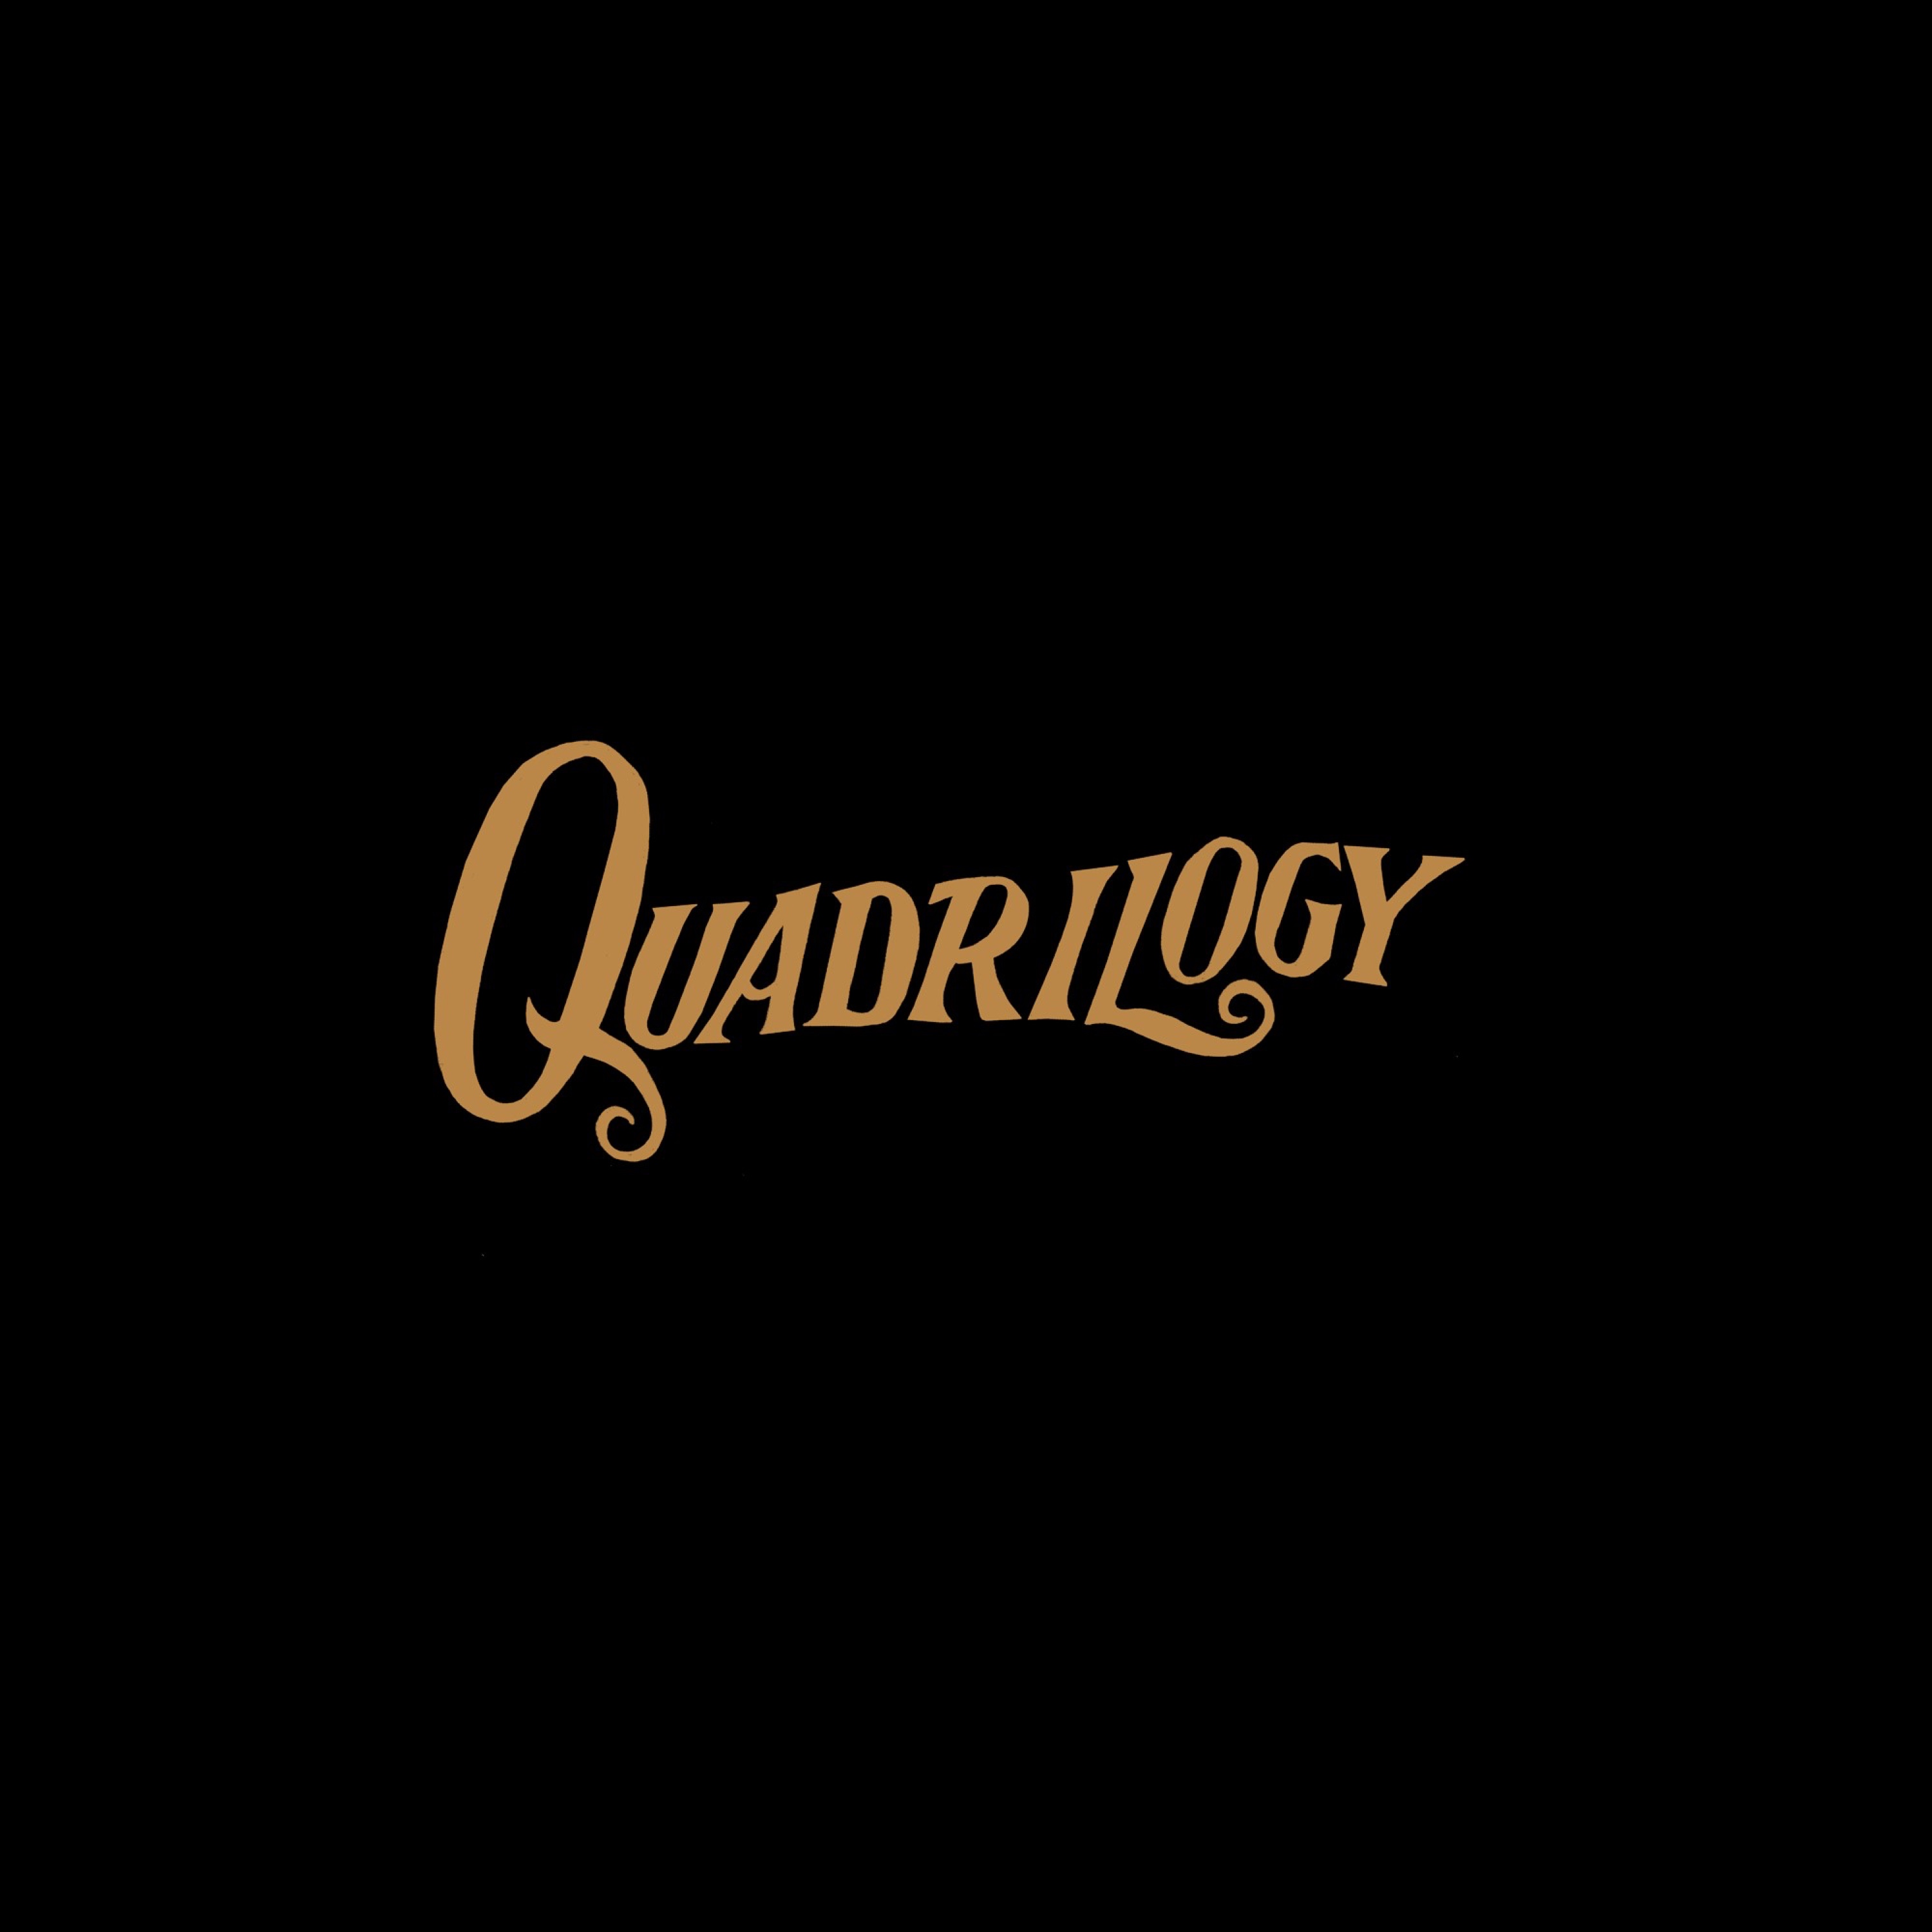 Kristofer  str m - Quadrilogy